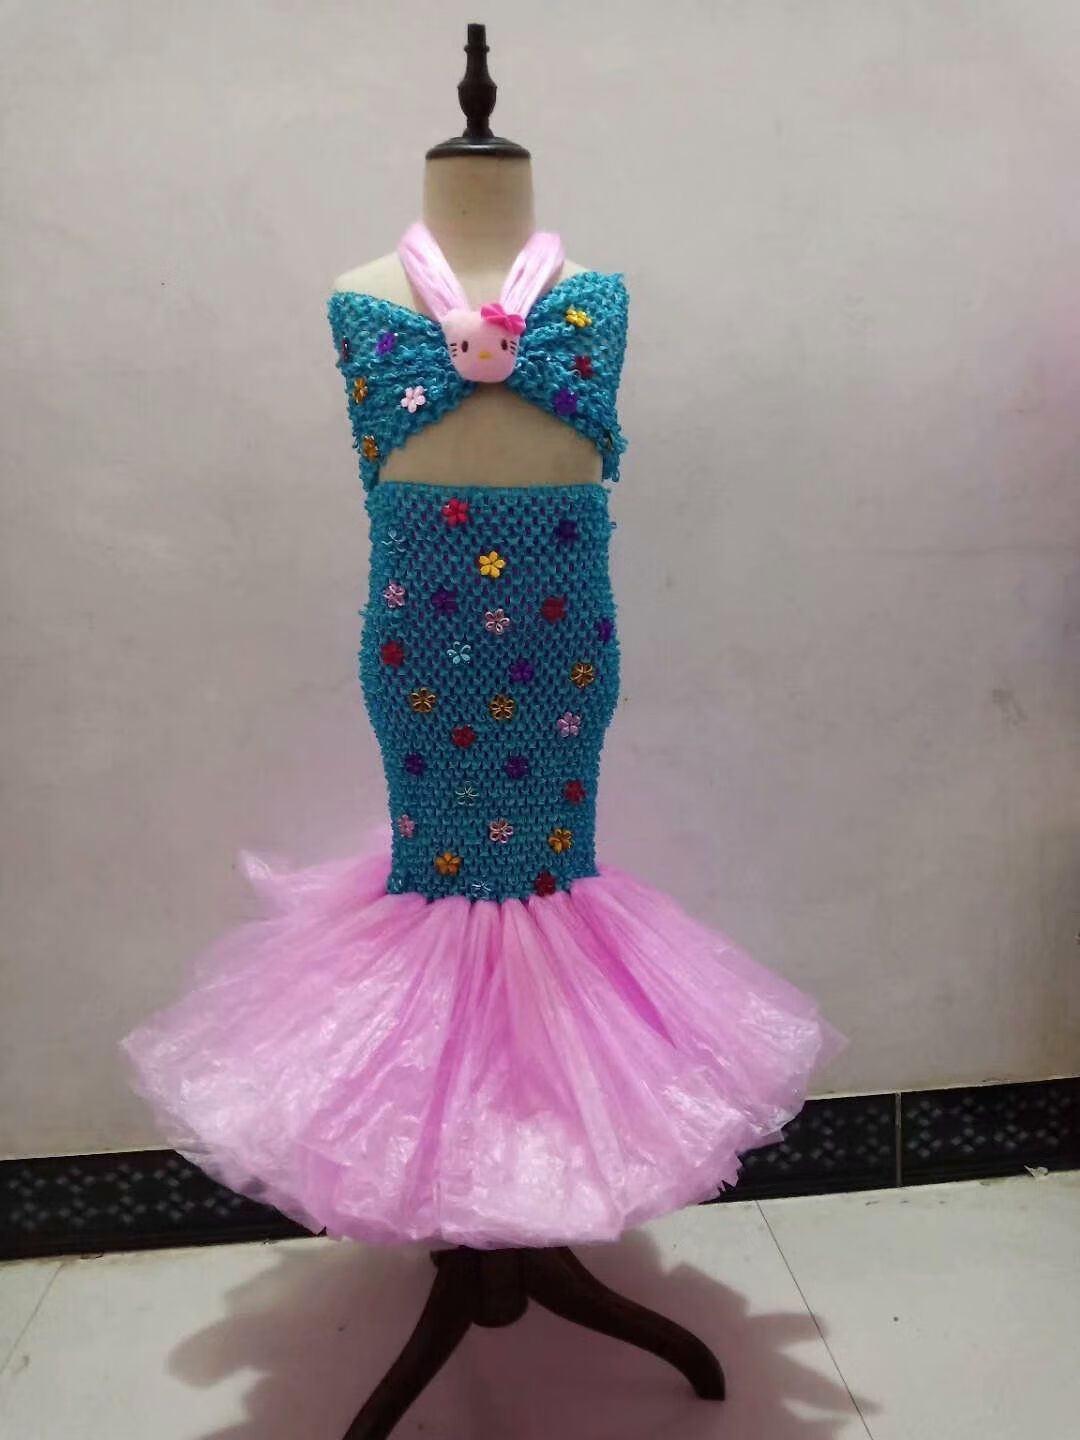 央紫 环保时装秀女孩儿童环保服装美人鱼手工diy半成品幼儿园亲子创意